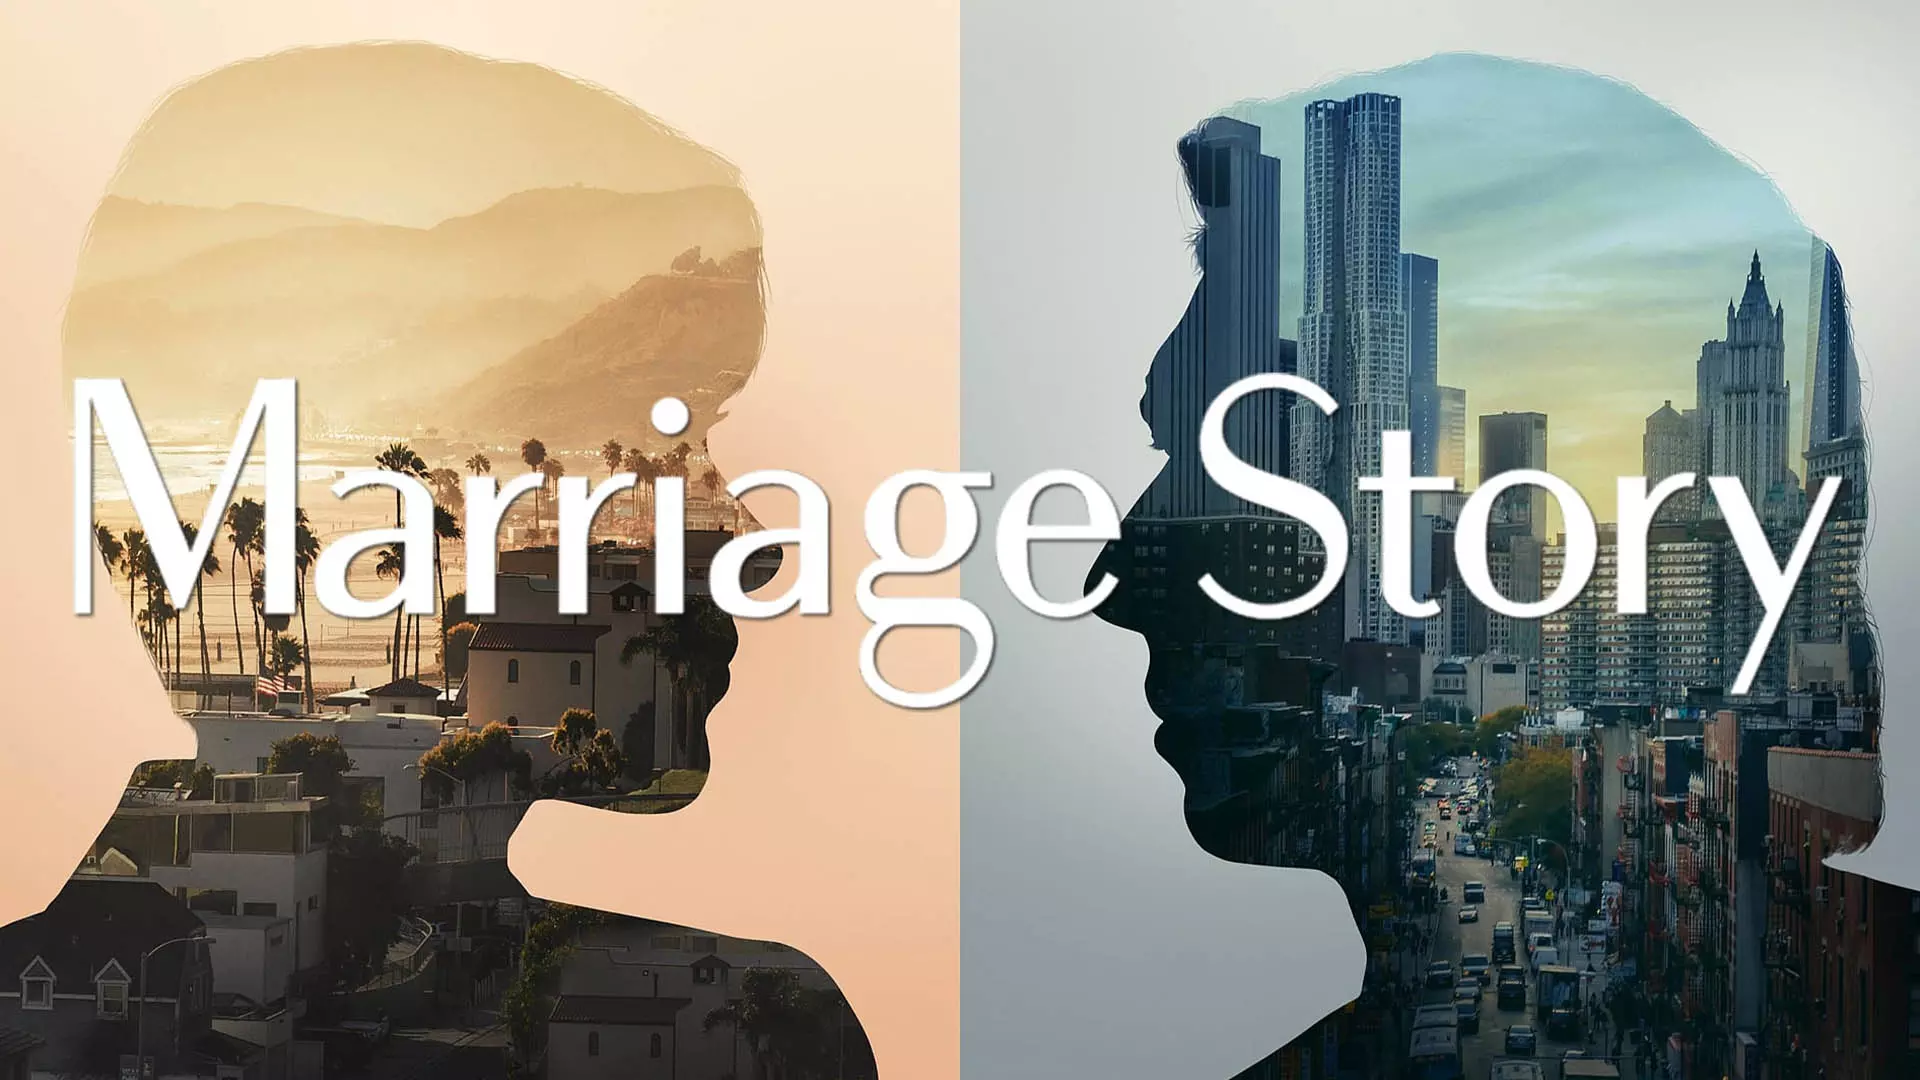 پوستر فیلم marriage story با تصاویری از آدام درایور و اسکارلت جوهانسون